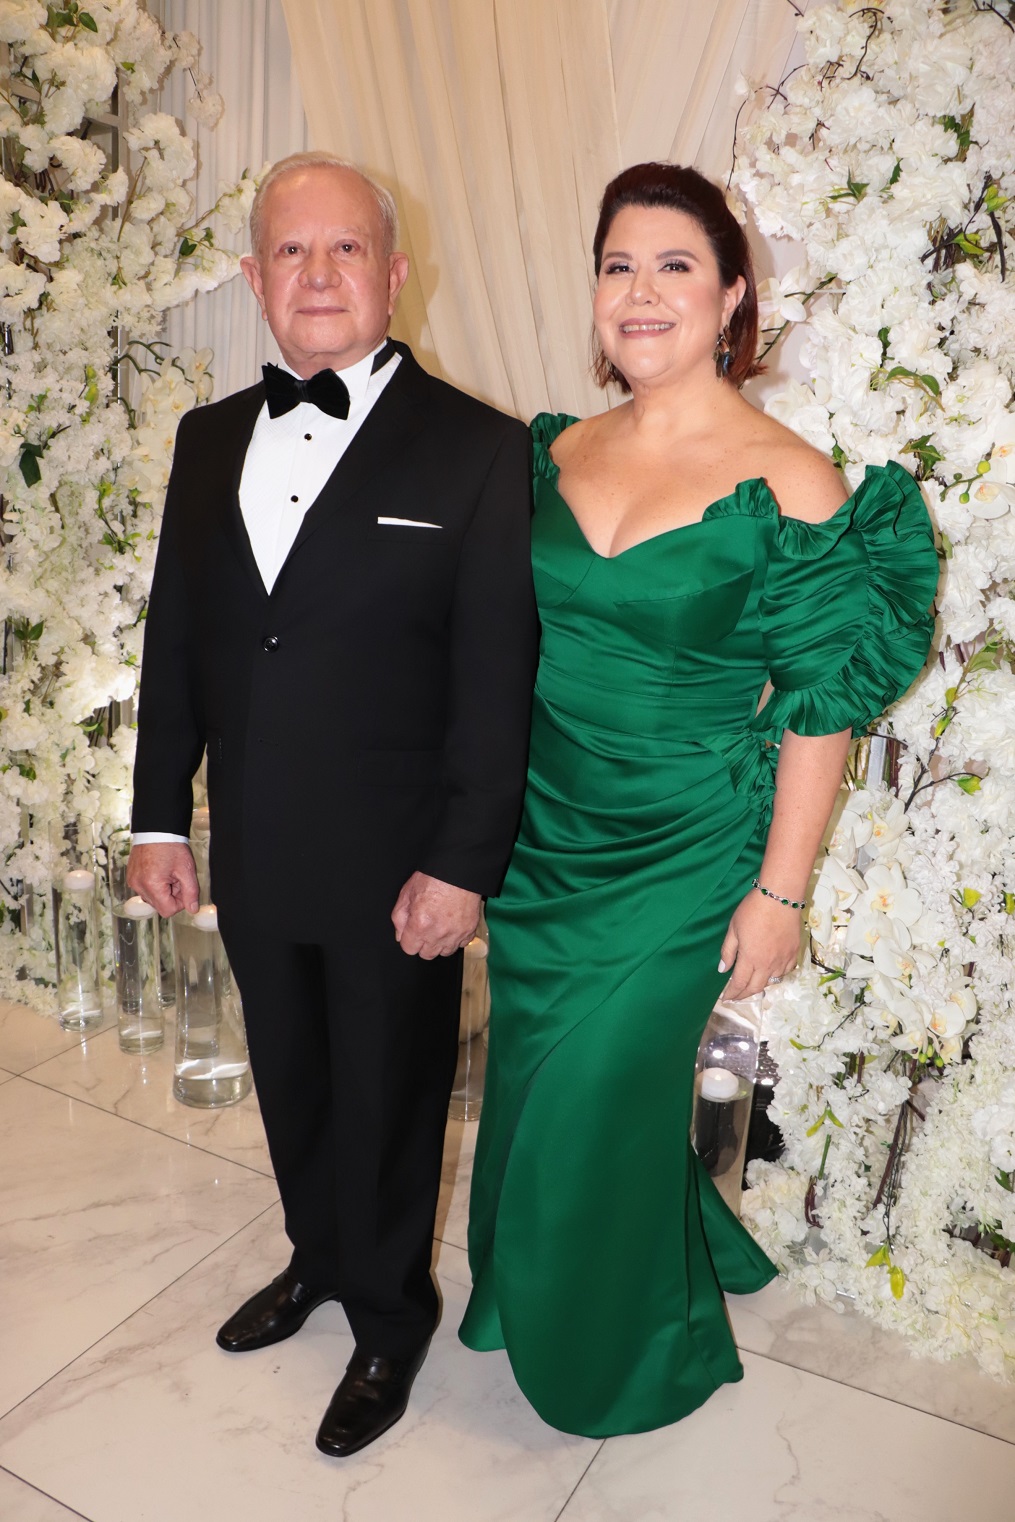 La boda de Emma Mejía y Roger D. Valladares: un pacto de Amor y una historia memorable